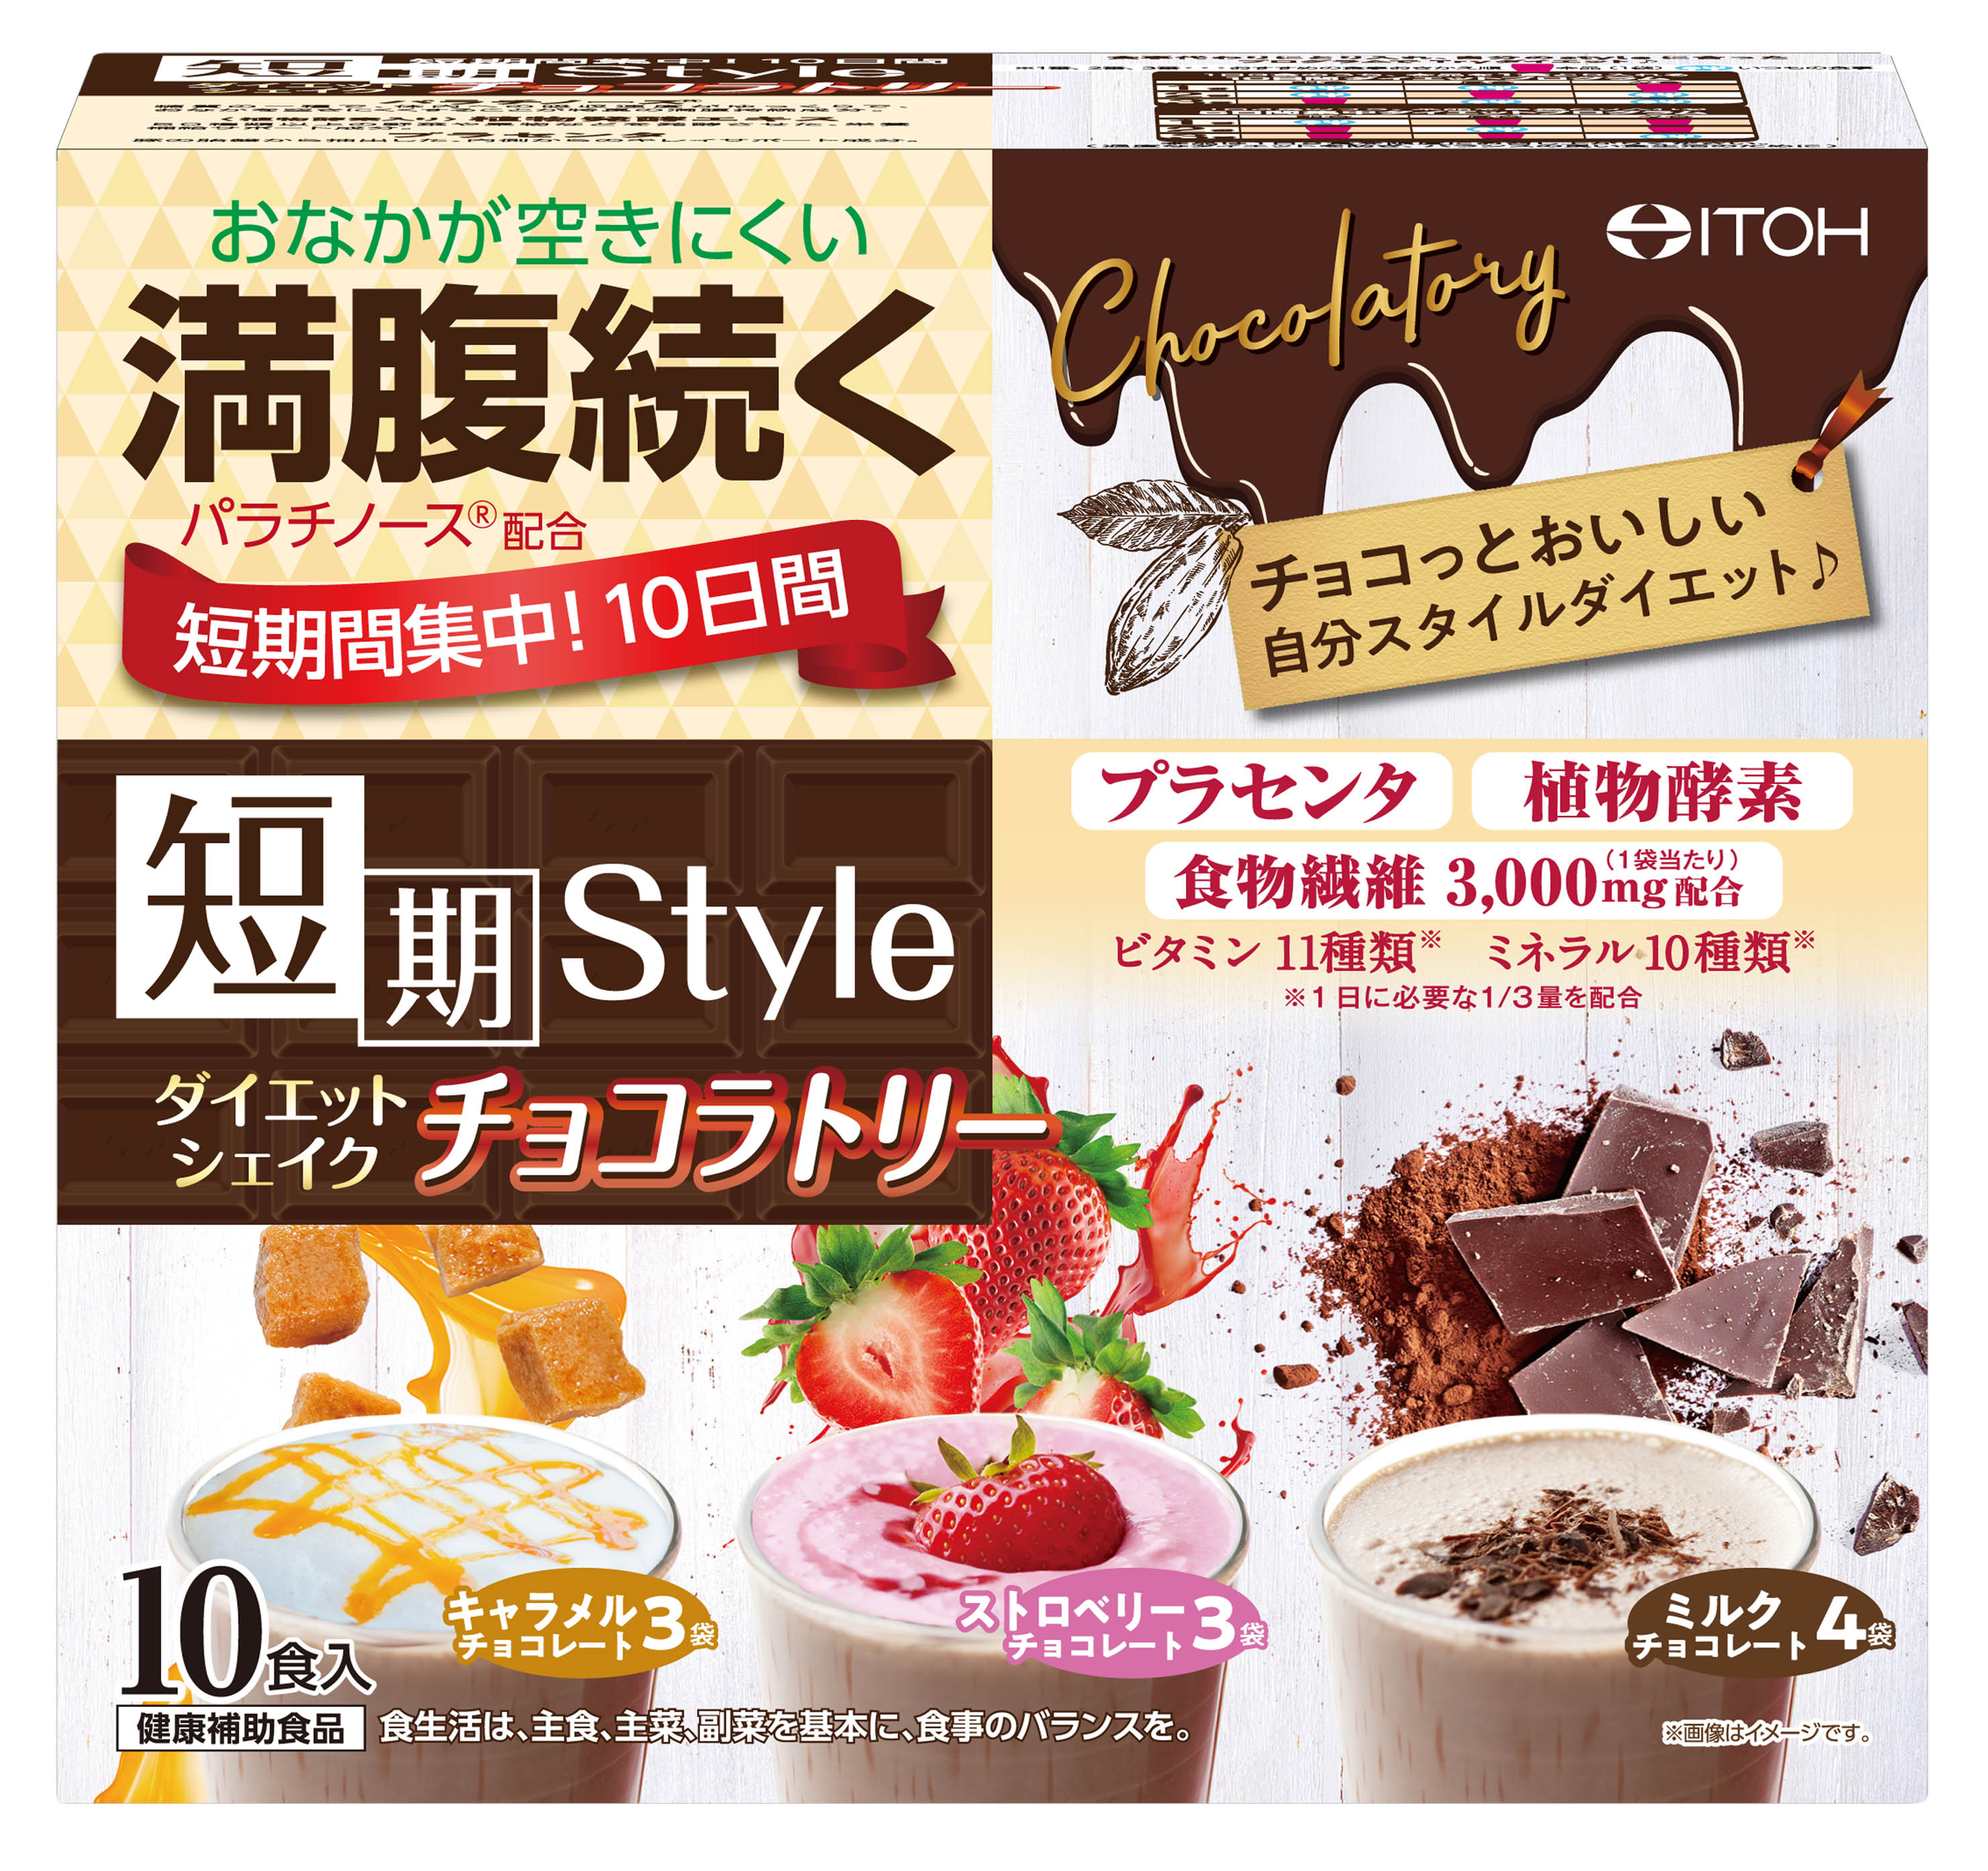 短期スタイル ダイエットシェイク チョコラトリー | 健康食品のことなら井藤漢方製薬